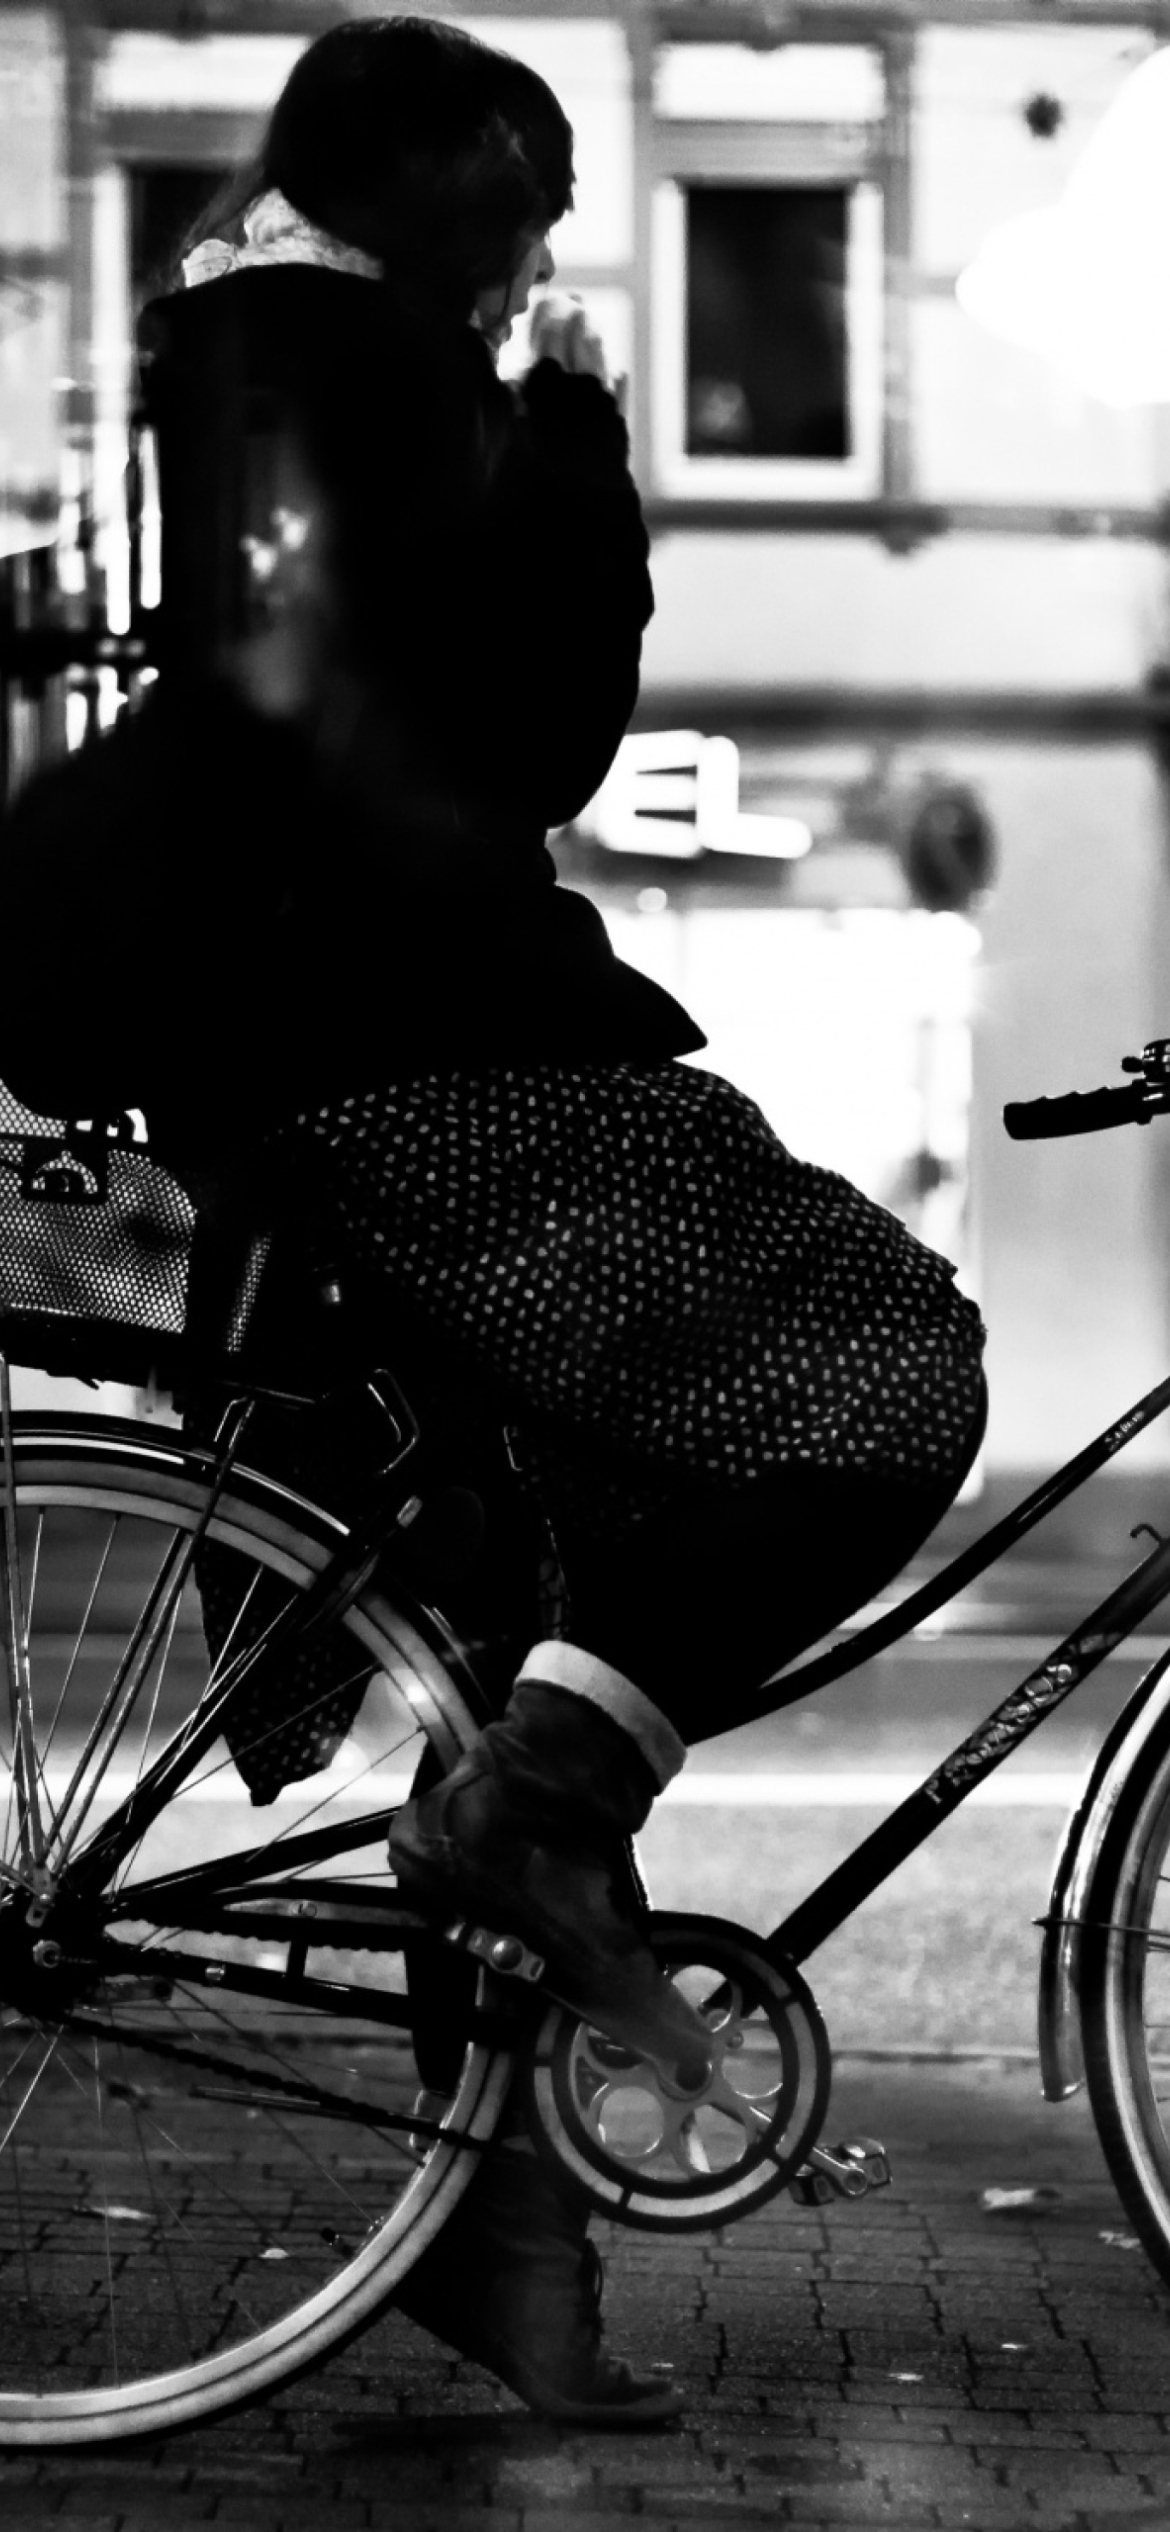 Riding A Bike wallpaper 1170x2532